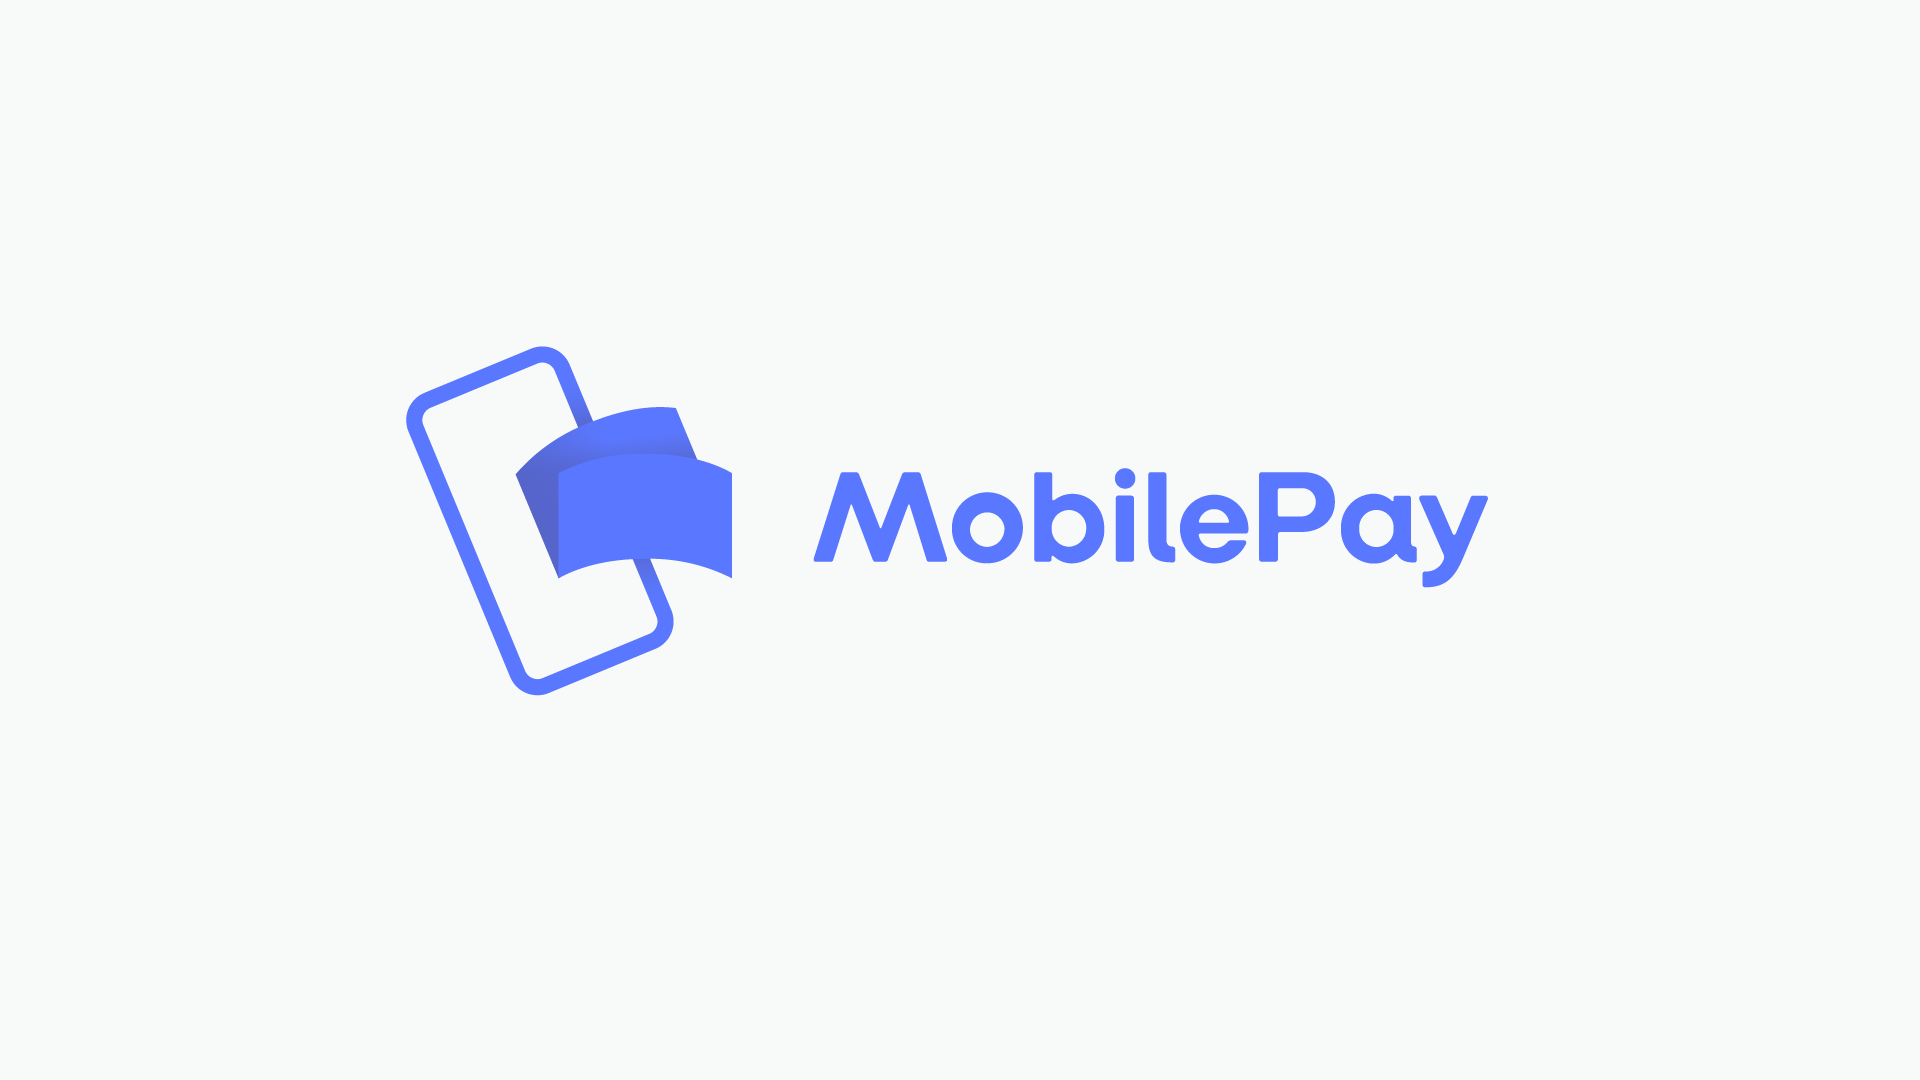 MobilePay ikon